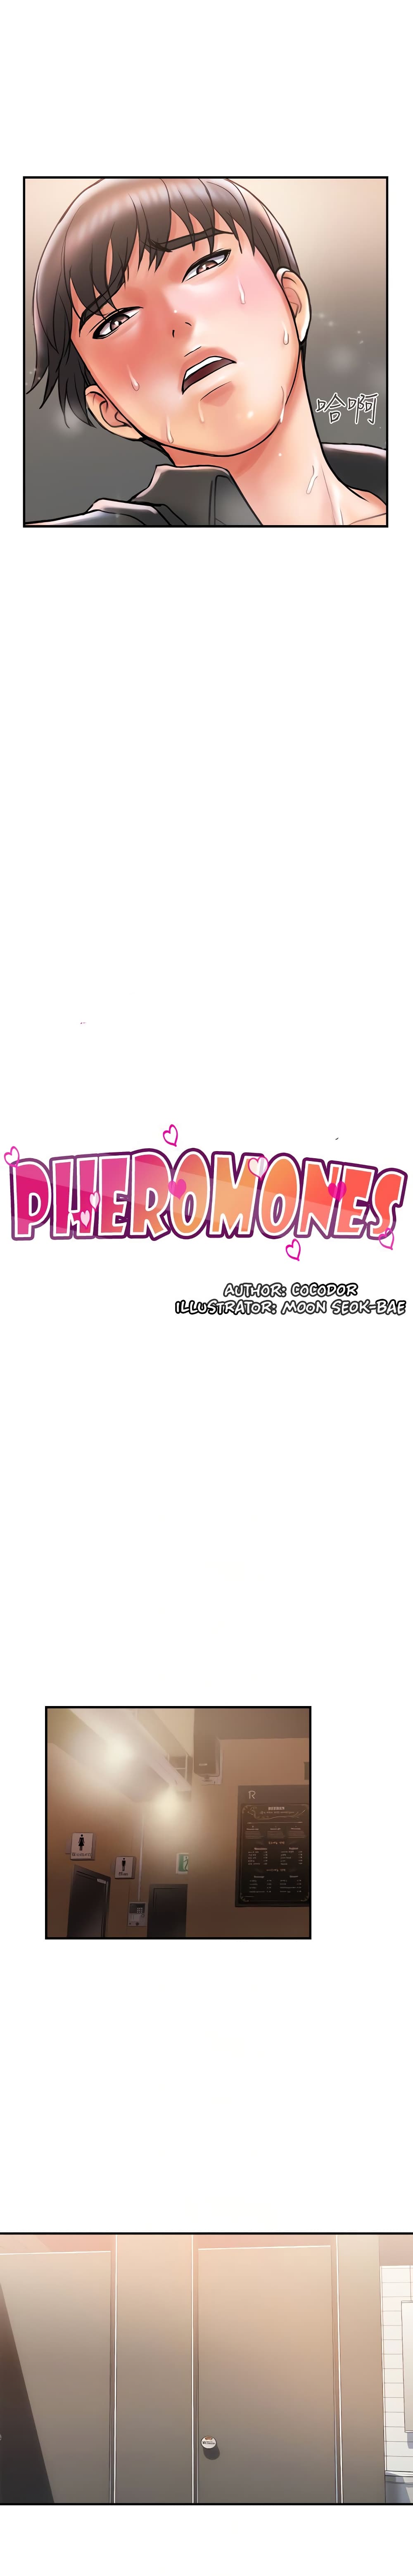 Pheromones 4 04